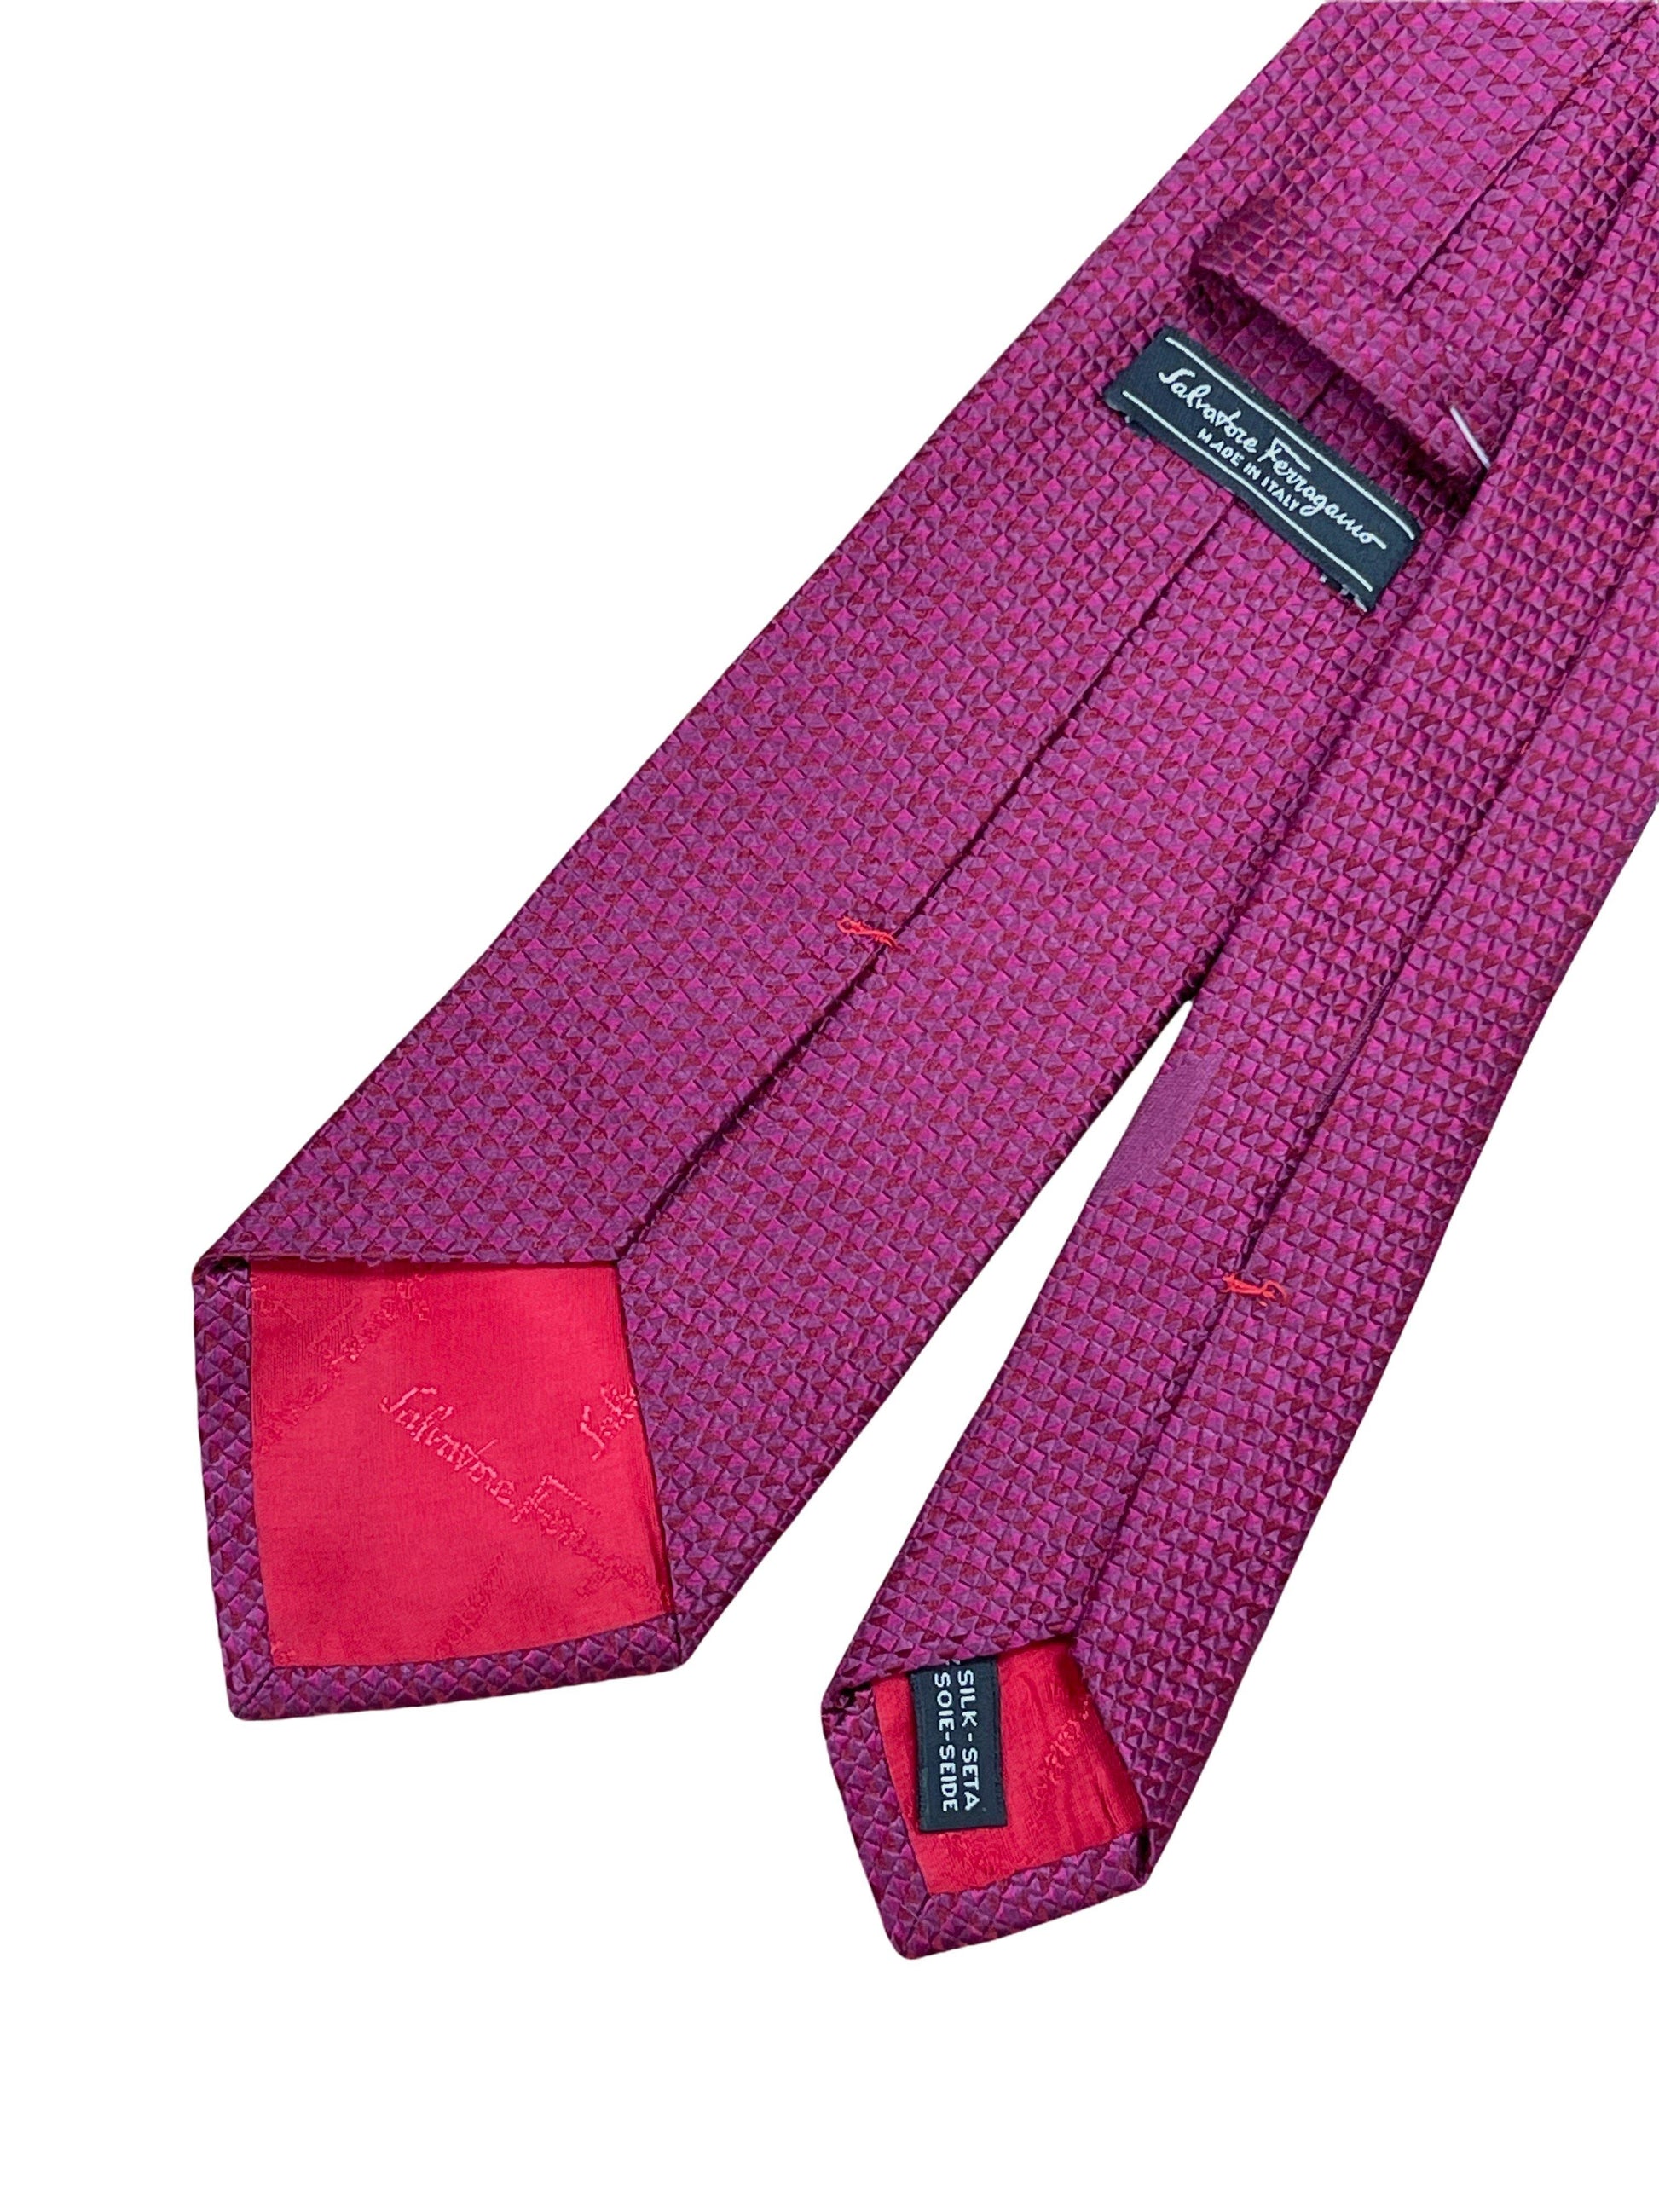 Salvatore Ferragamo purple geo printed silk tie. Genuine Design luxury consignment